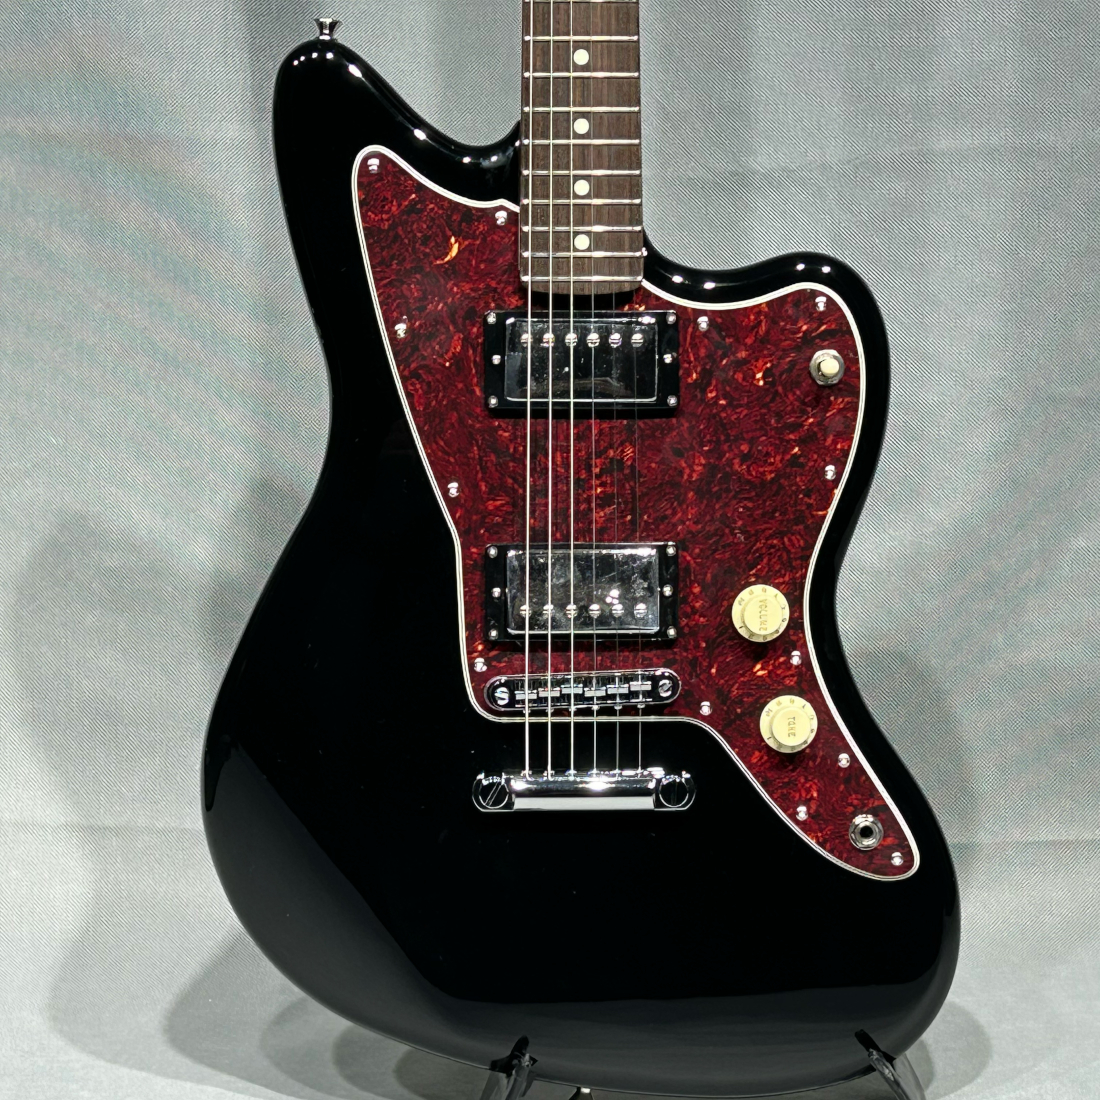 Fender Made In Japan LIMITED ADJUSTO-MATIC JAZZMASTER HH Black